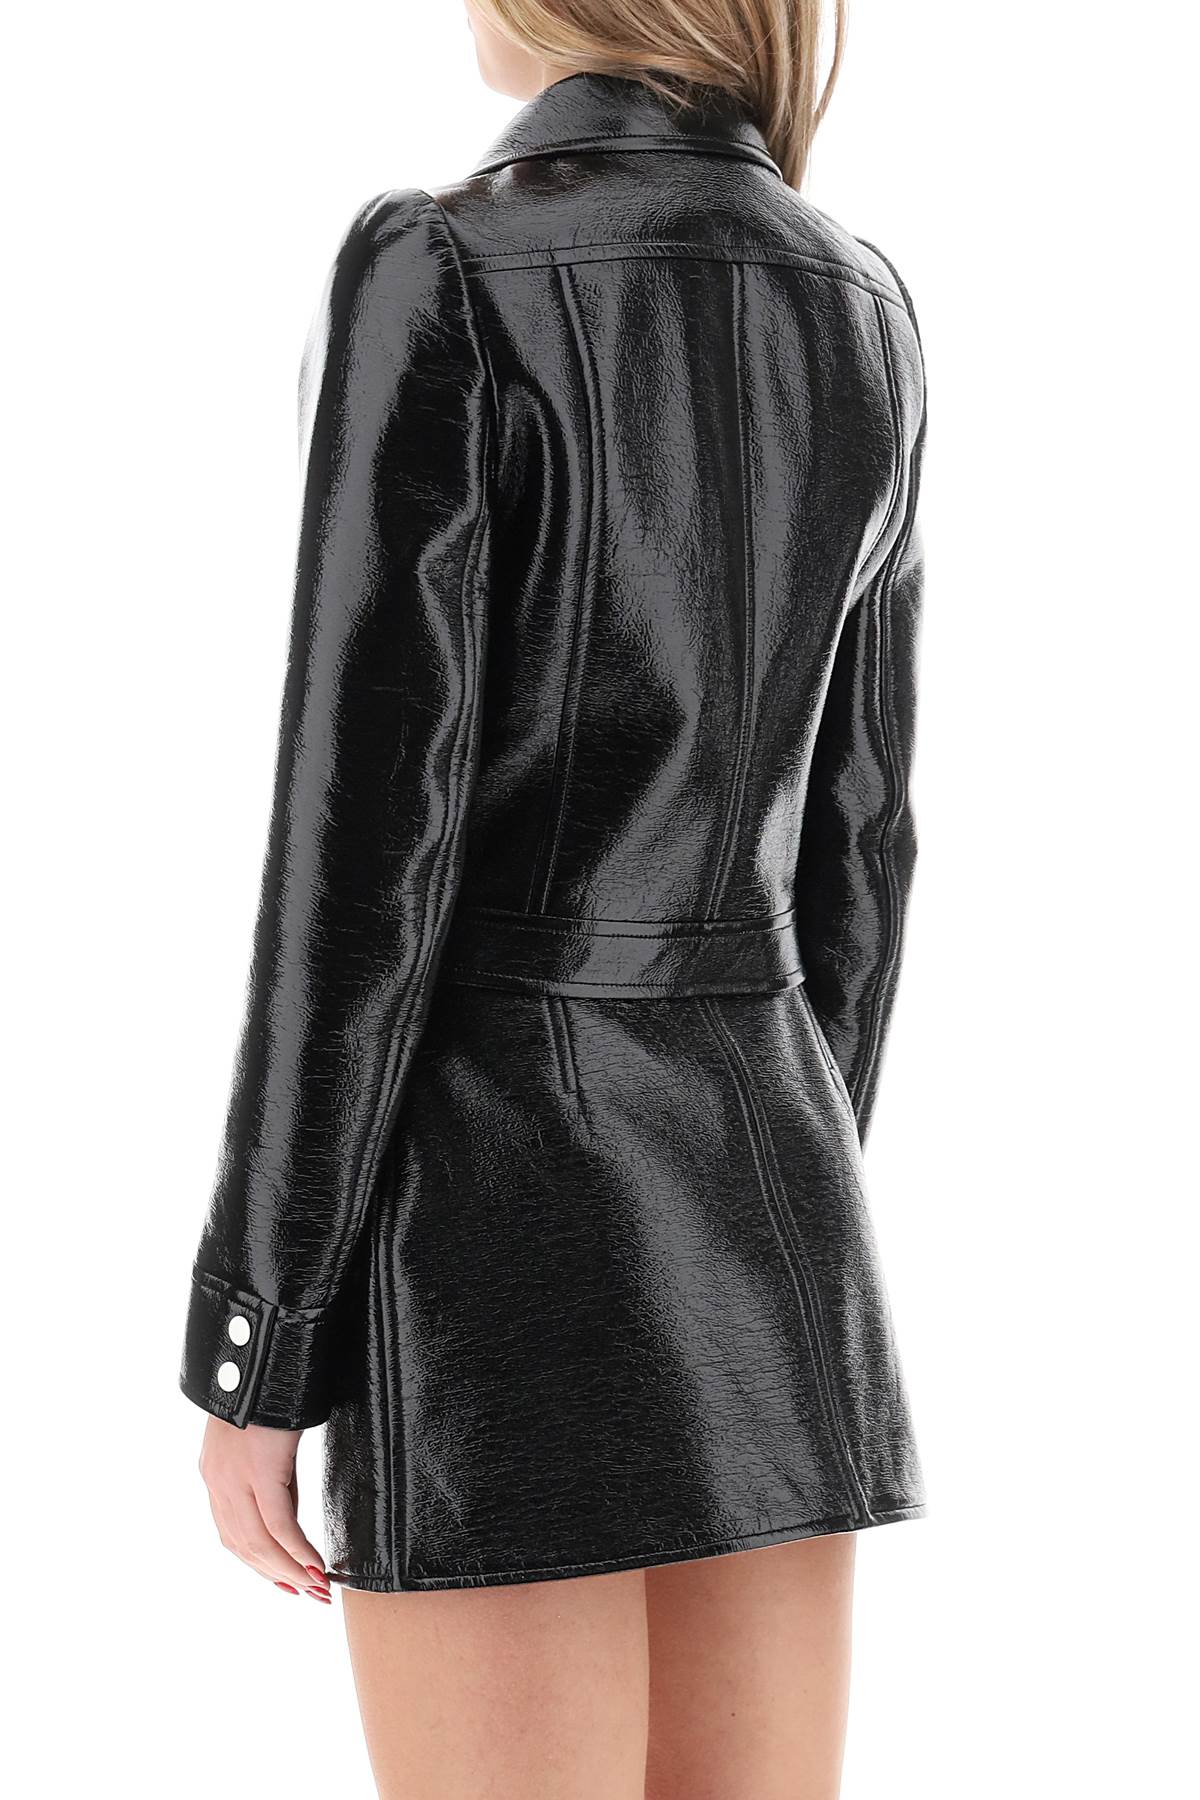 Áo khoác lót cotton phủ đen đặc biệt với chi tiết logo cho phụ nữ